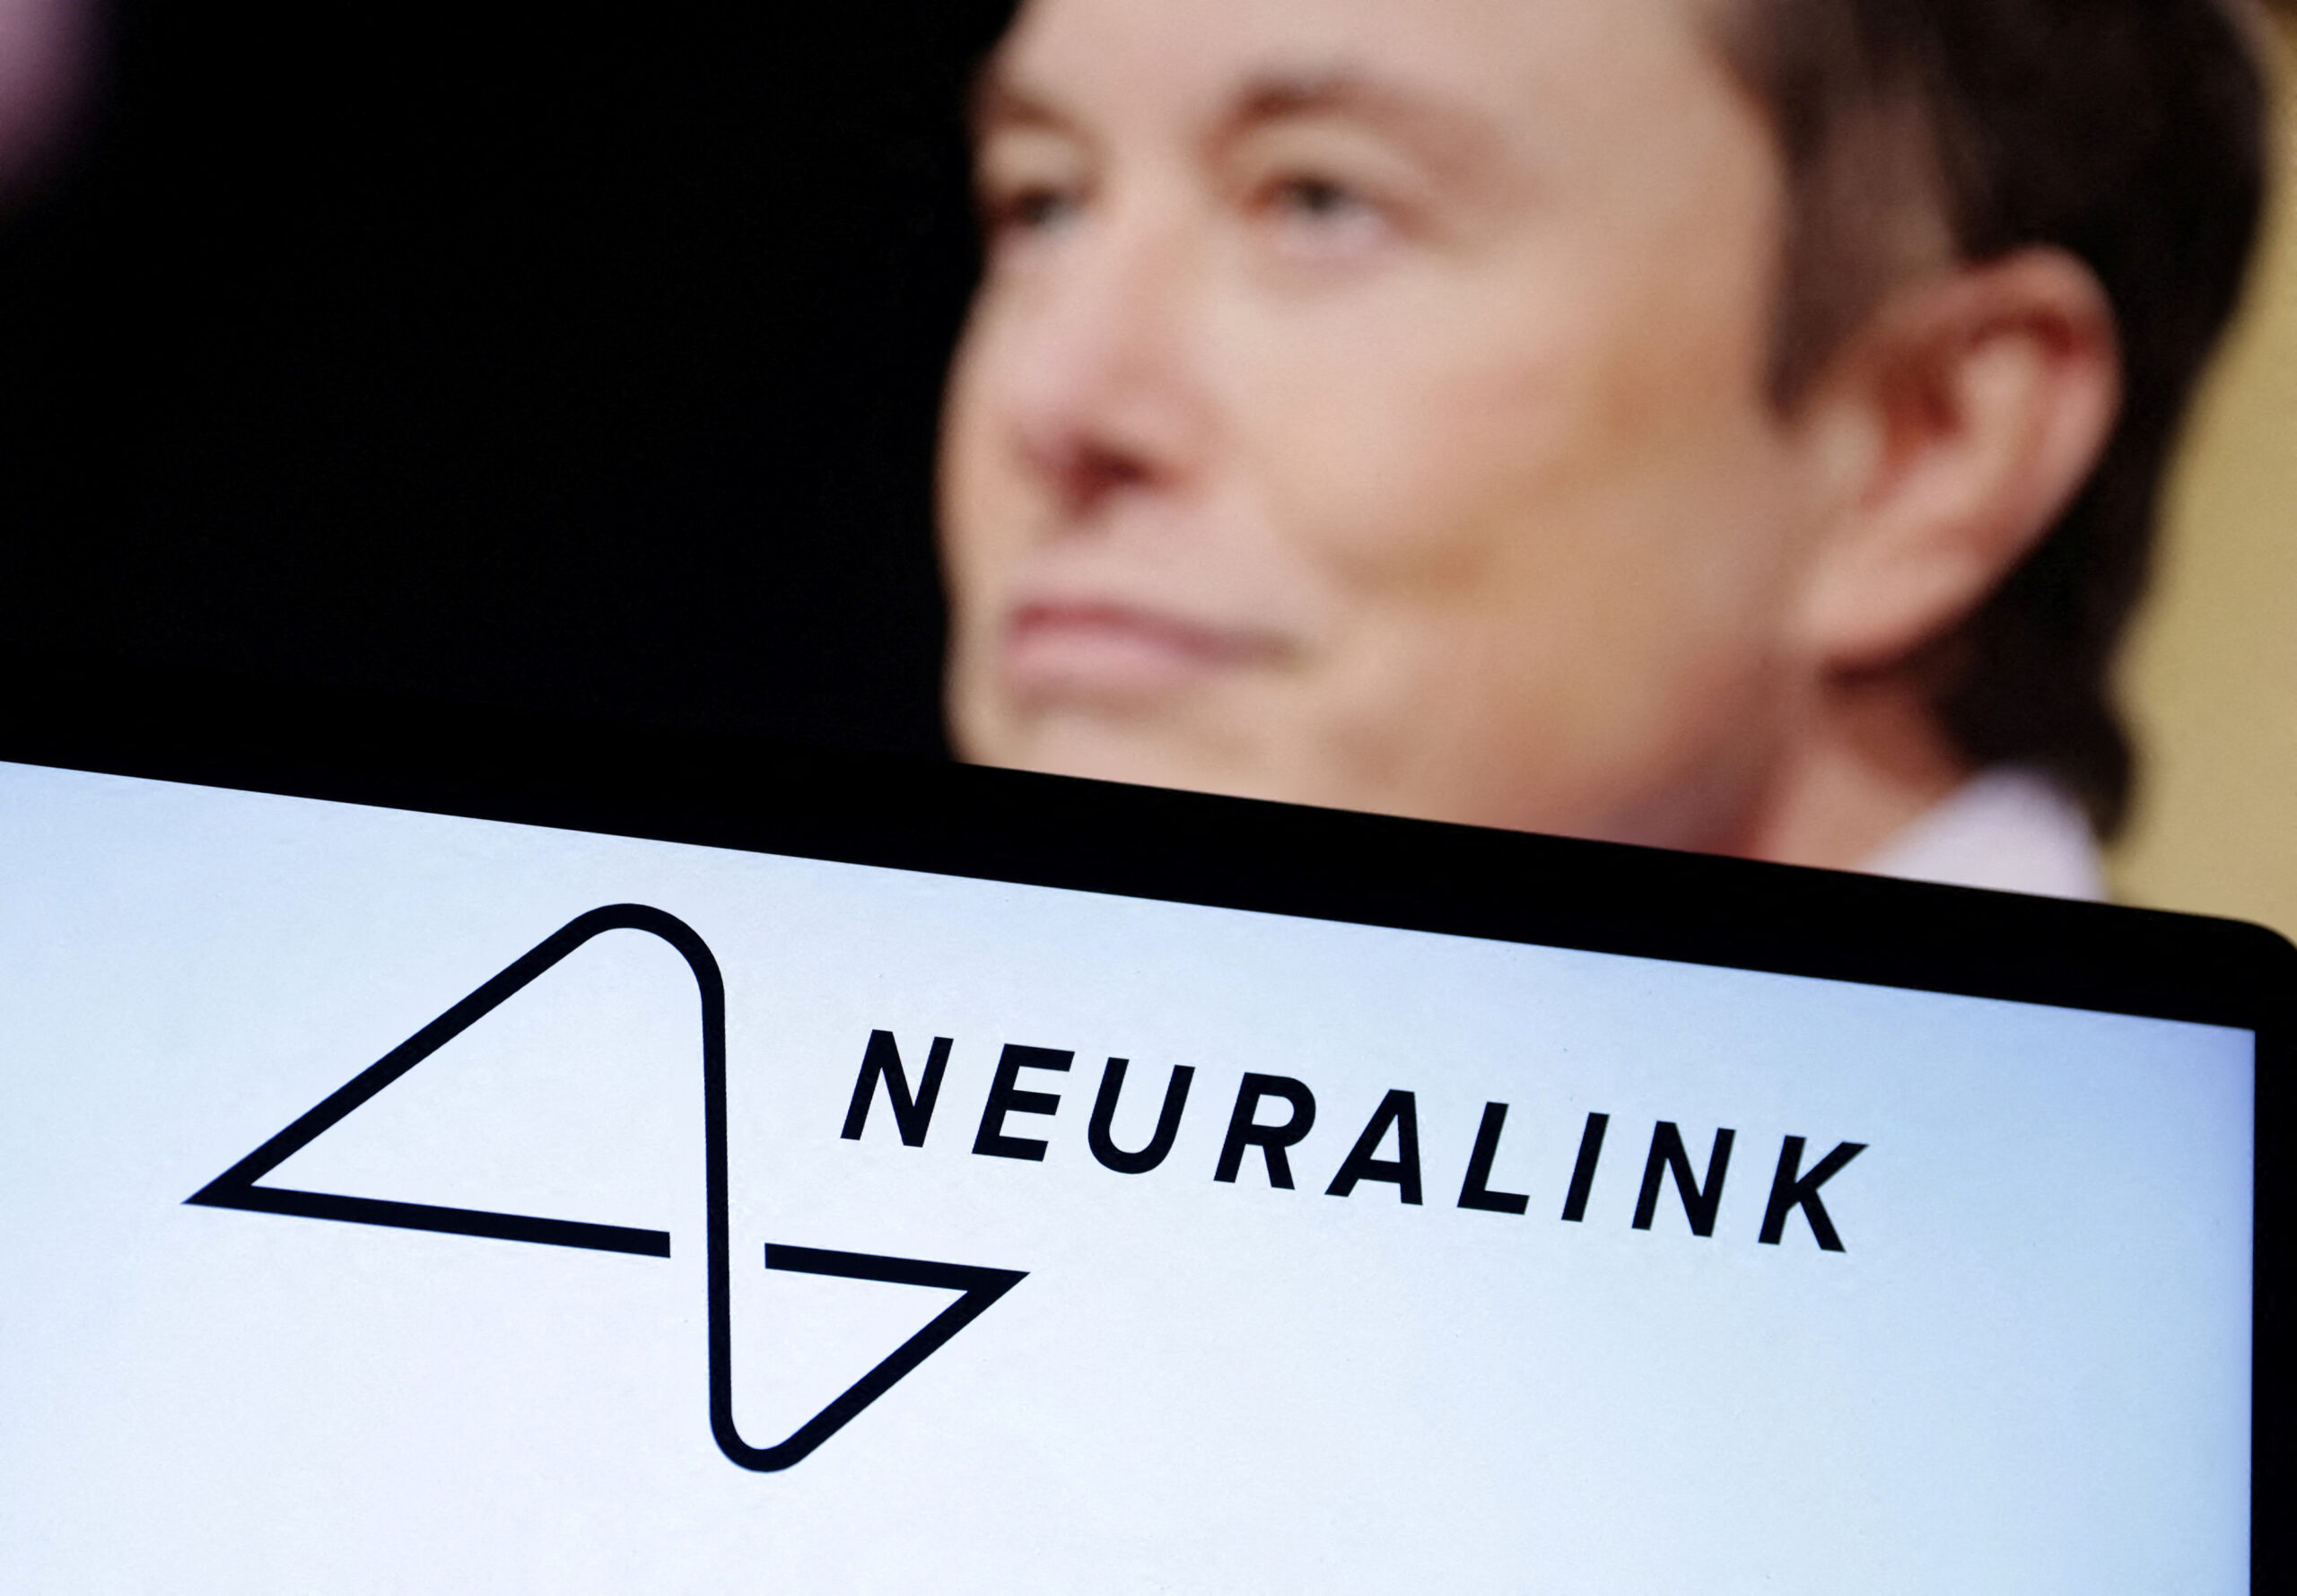 Perusahaan Elon Musk Dapat Izin Tanam Chip di Otak Manusia